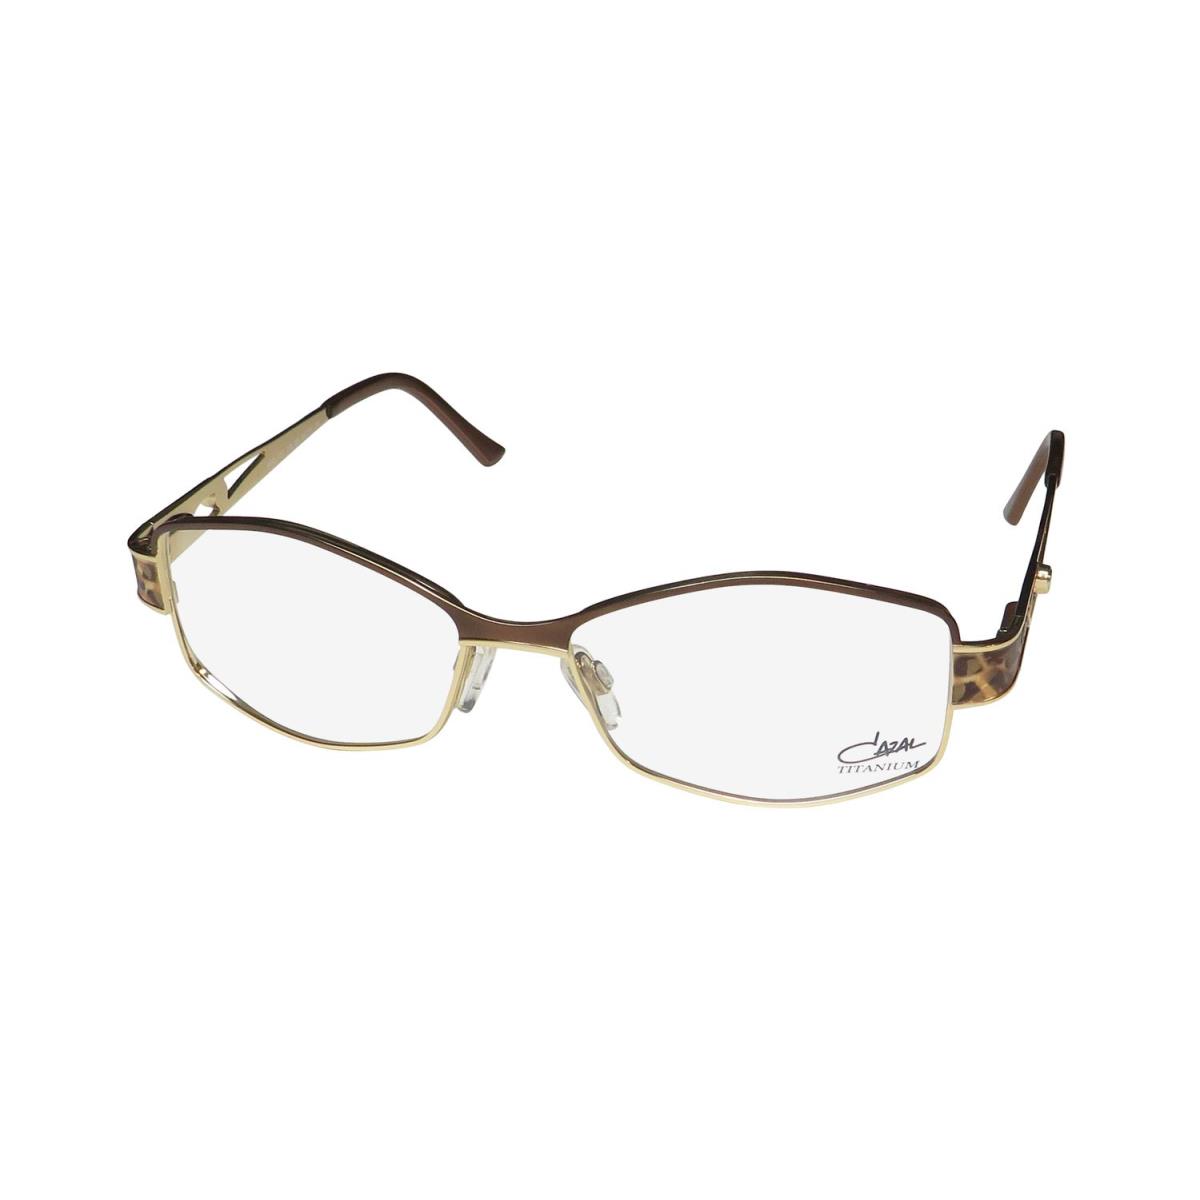 Cazal 1257 Titanium Metal Retro/vintage Collection Rare Eyeglass Frame/glasses Brown / Gold